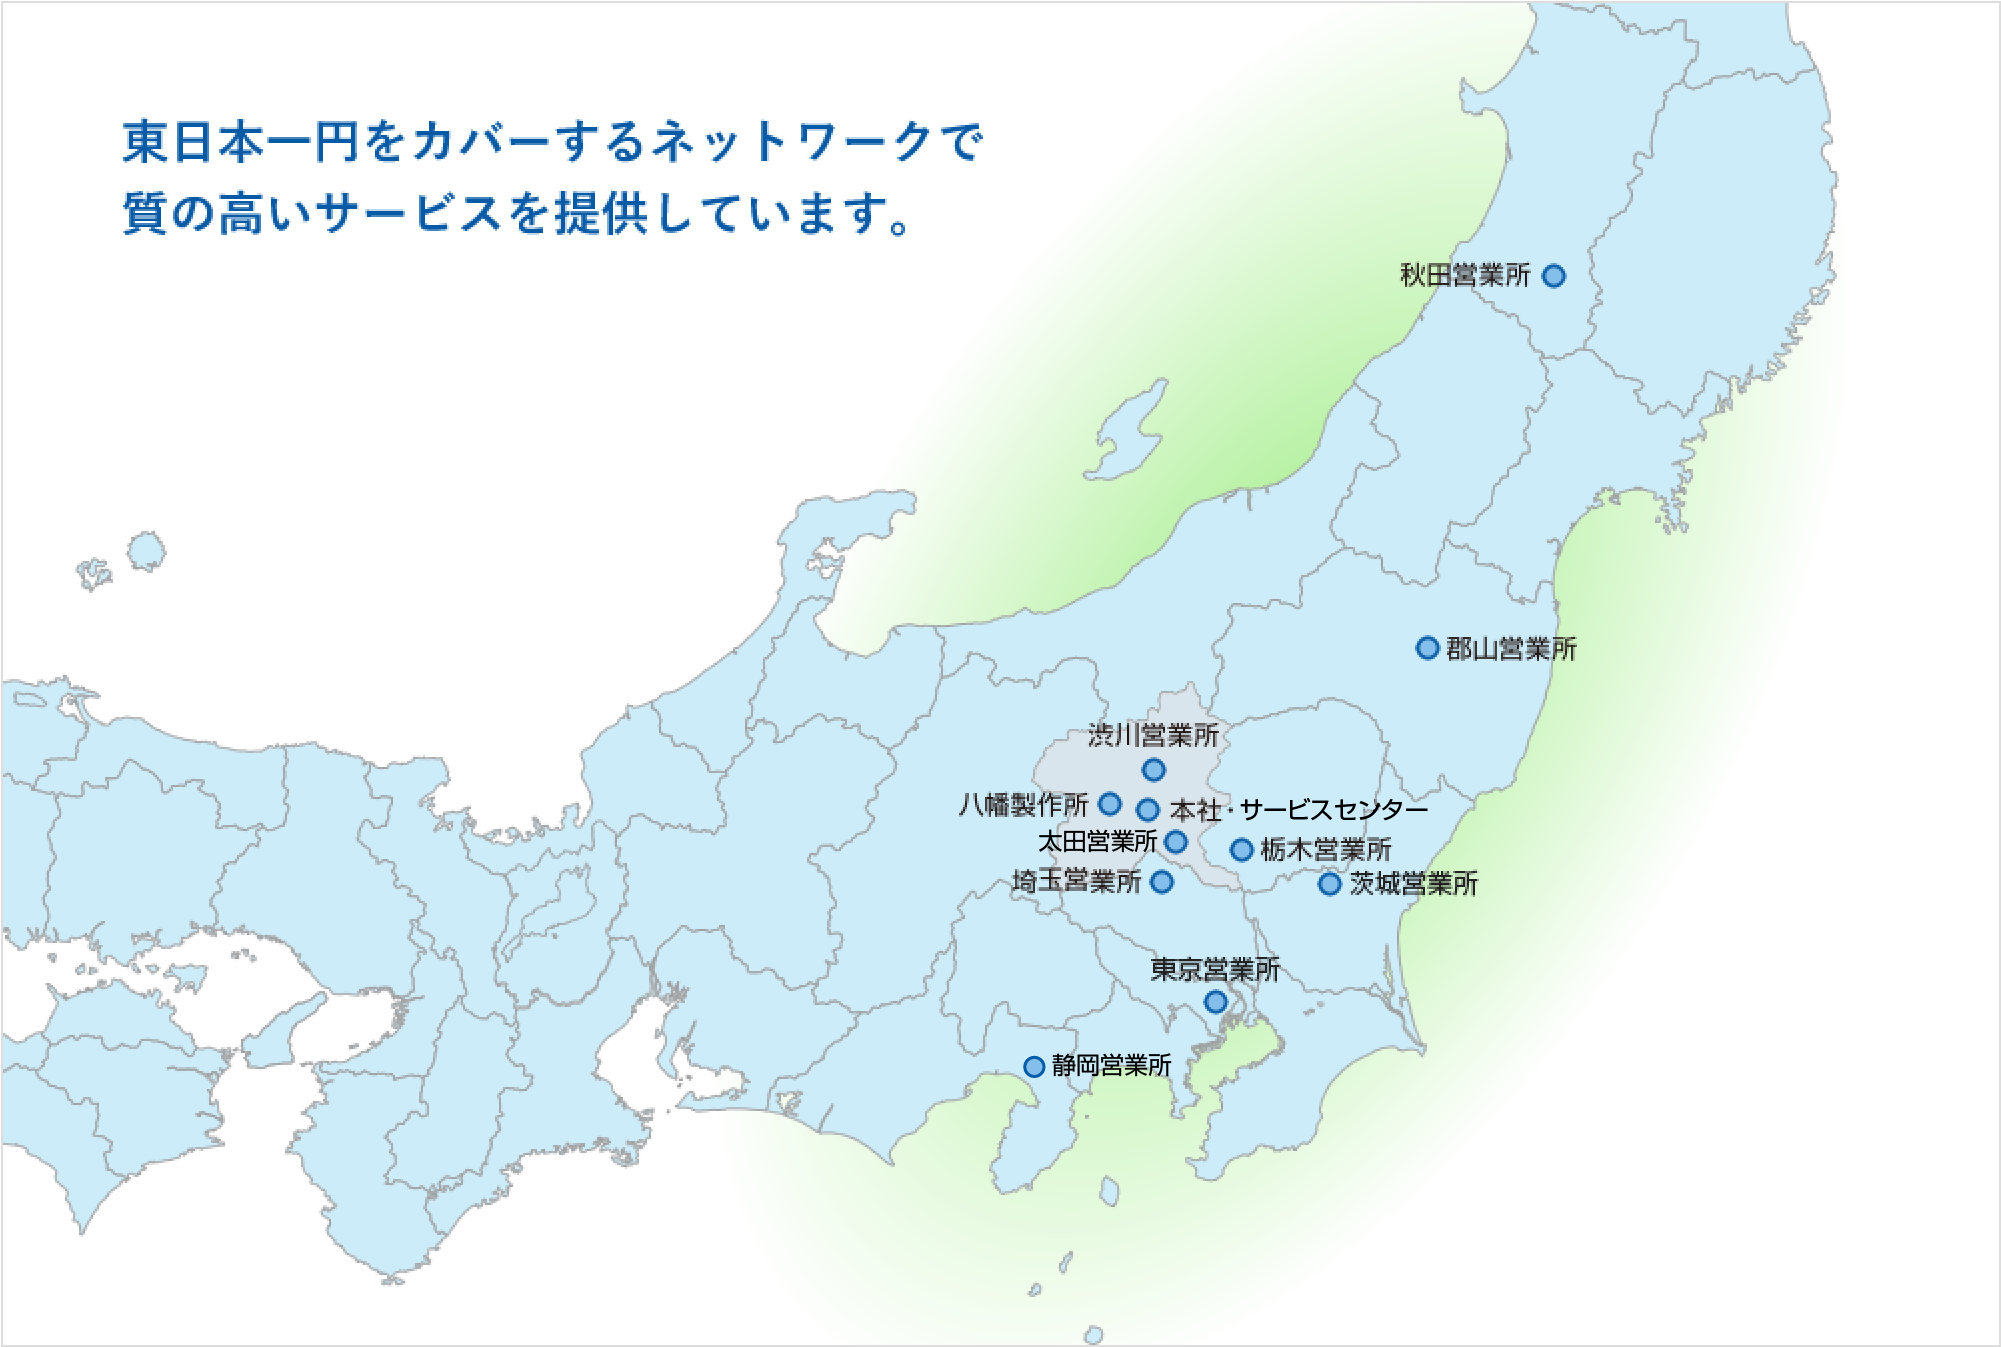 東日本一円をカバーするネットワークで質の高いサービスを提供しています。